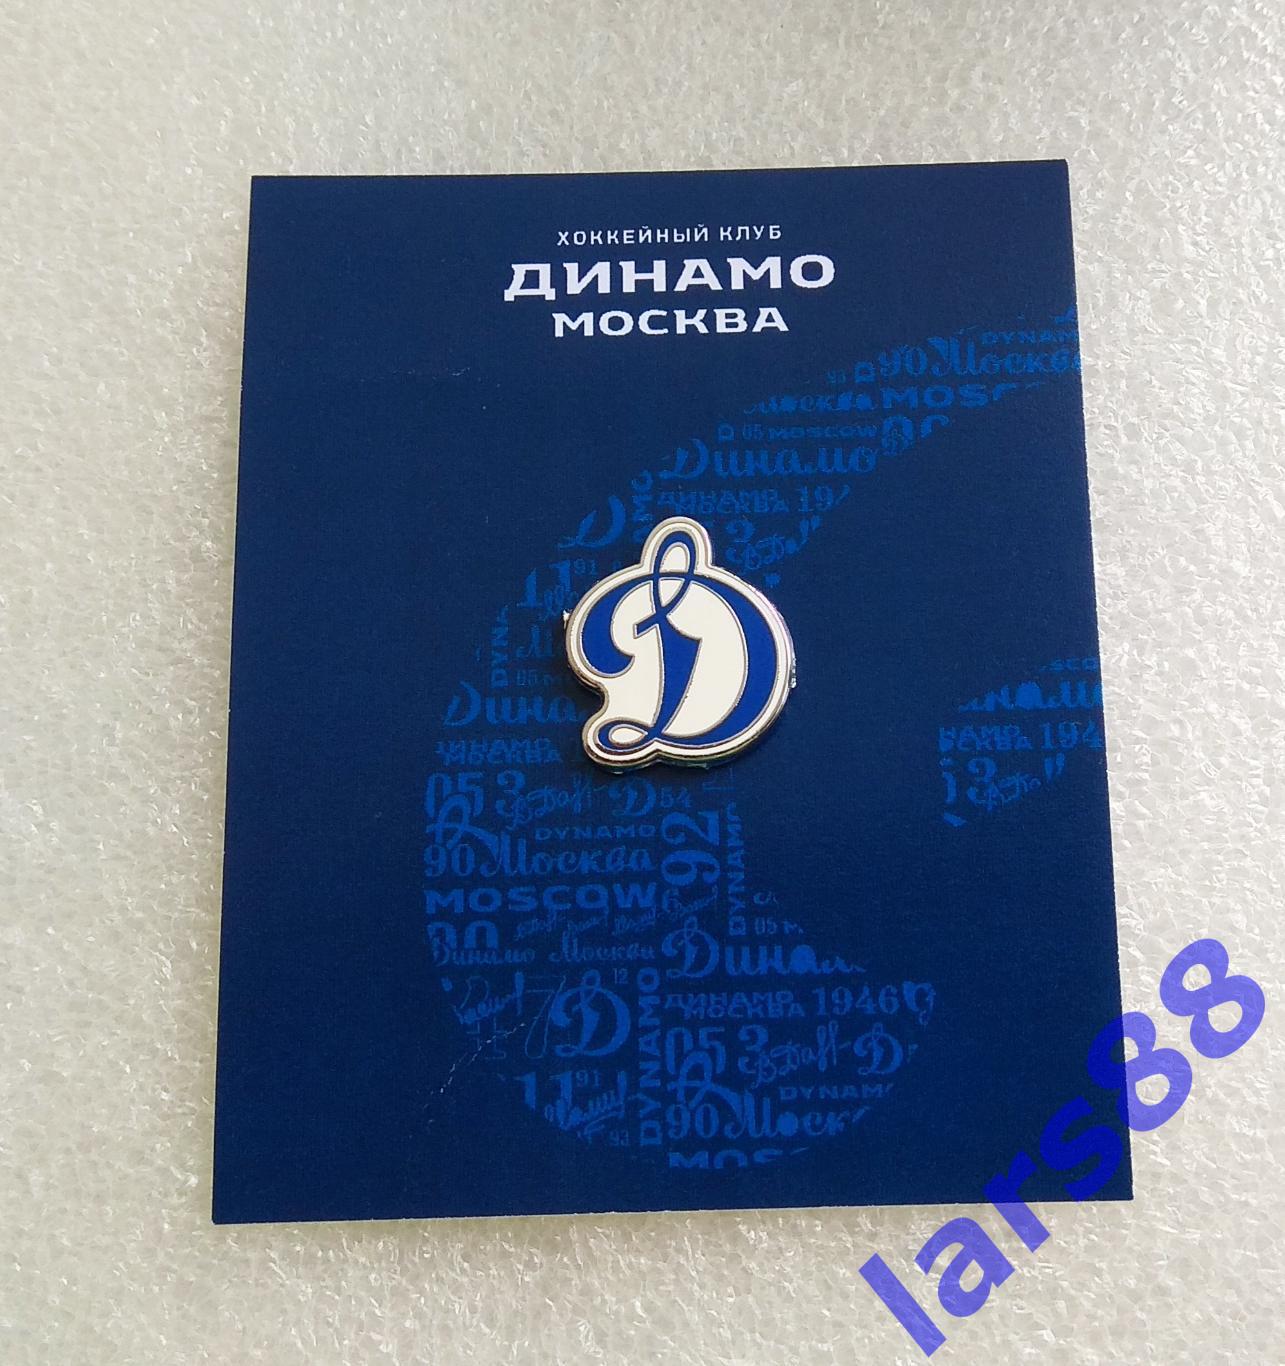 Значок ХК ДИНАМО Москва (КХЛ) - официальное издание (сезон 2021/22).